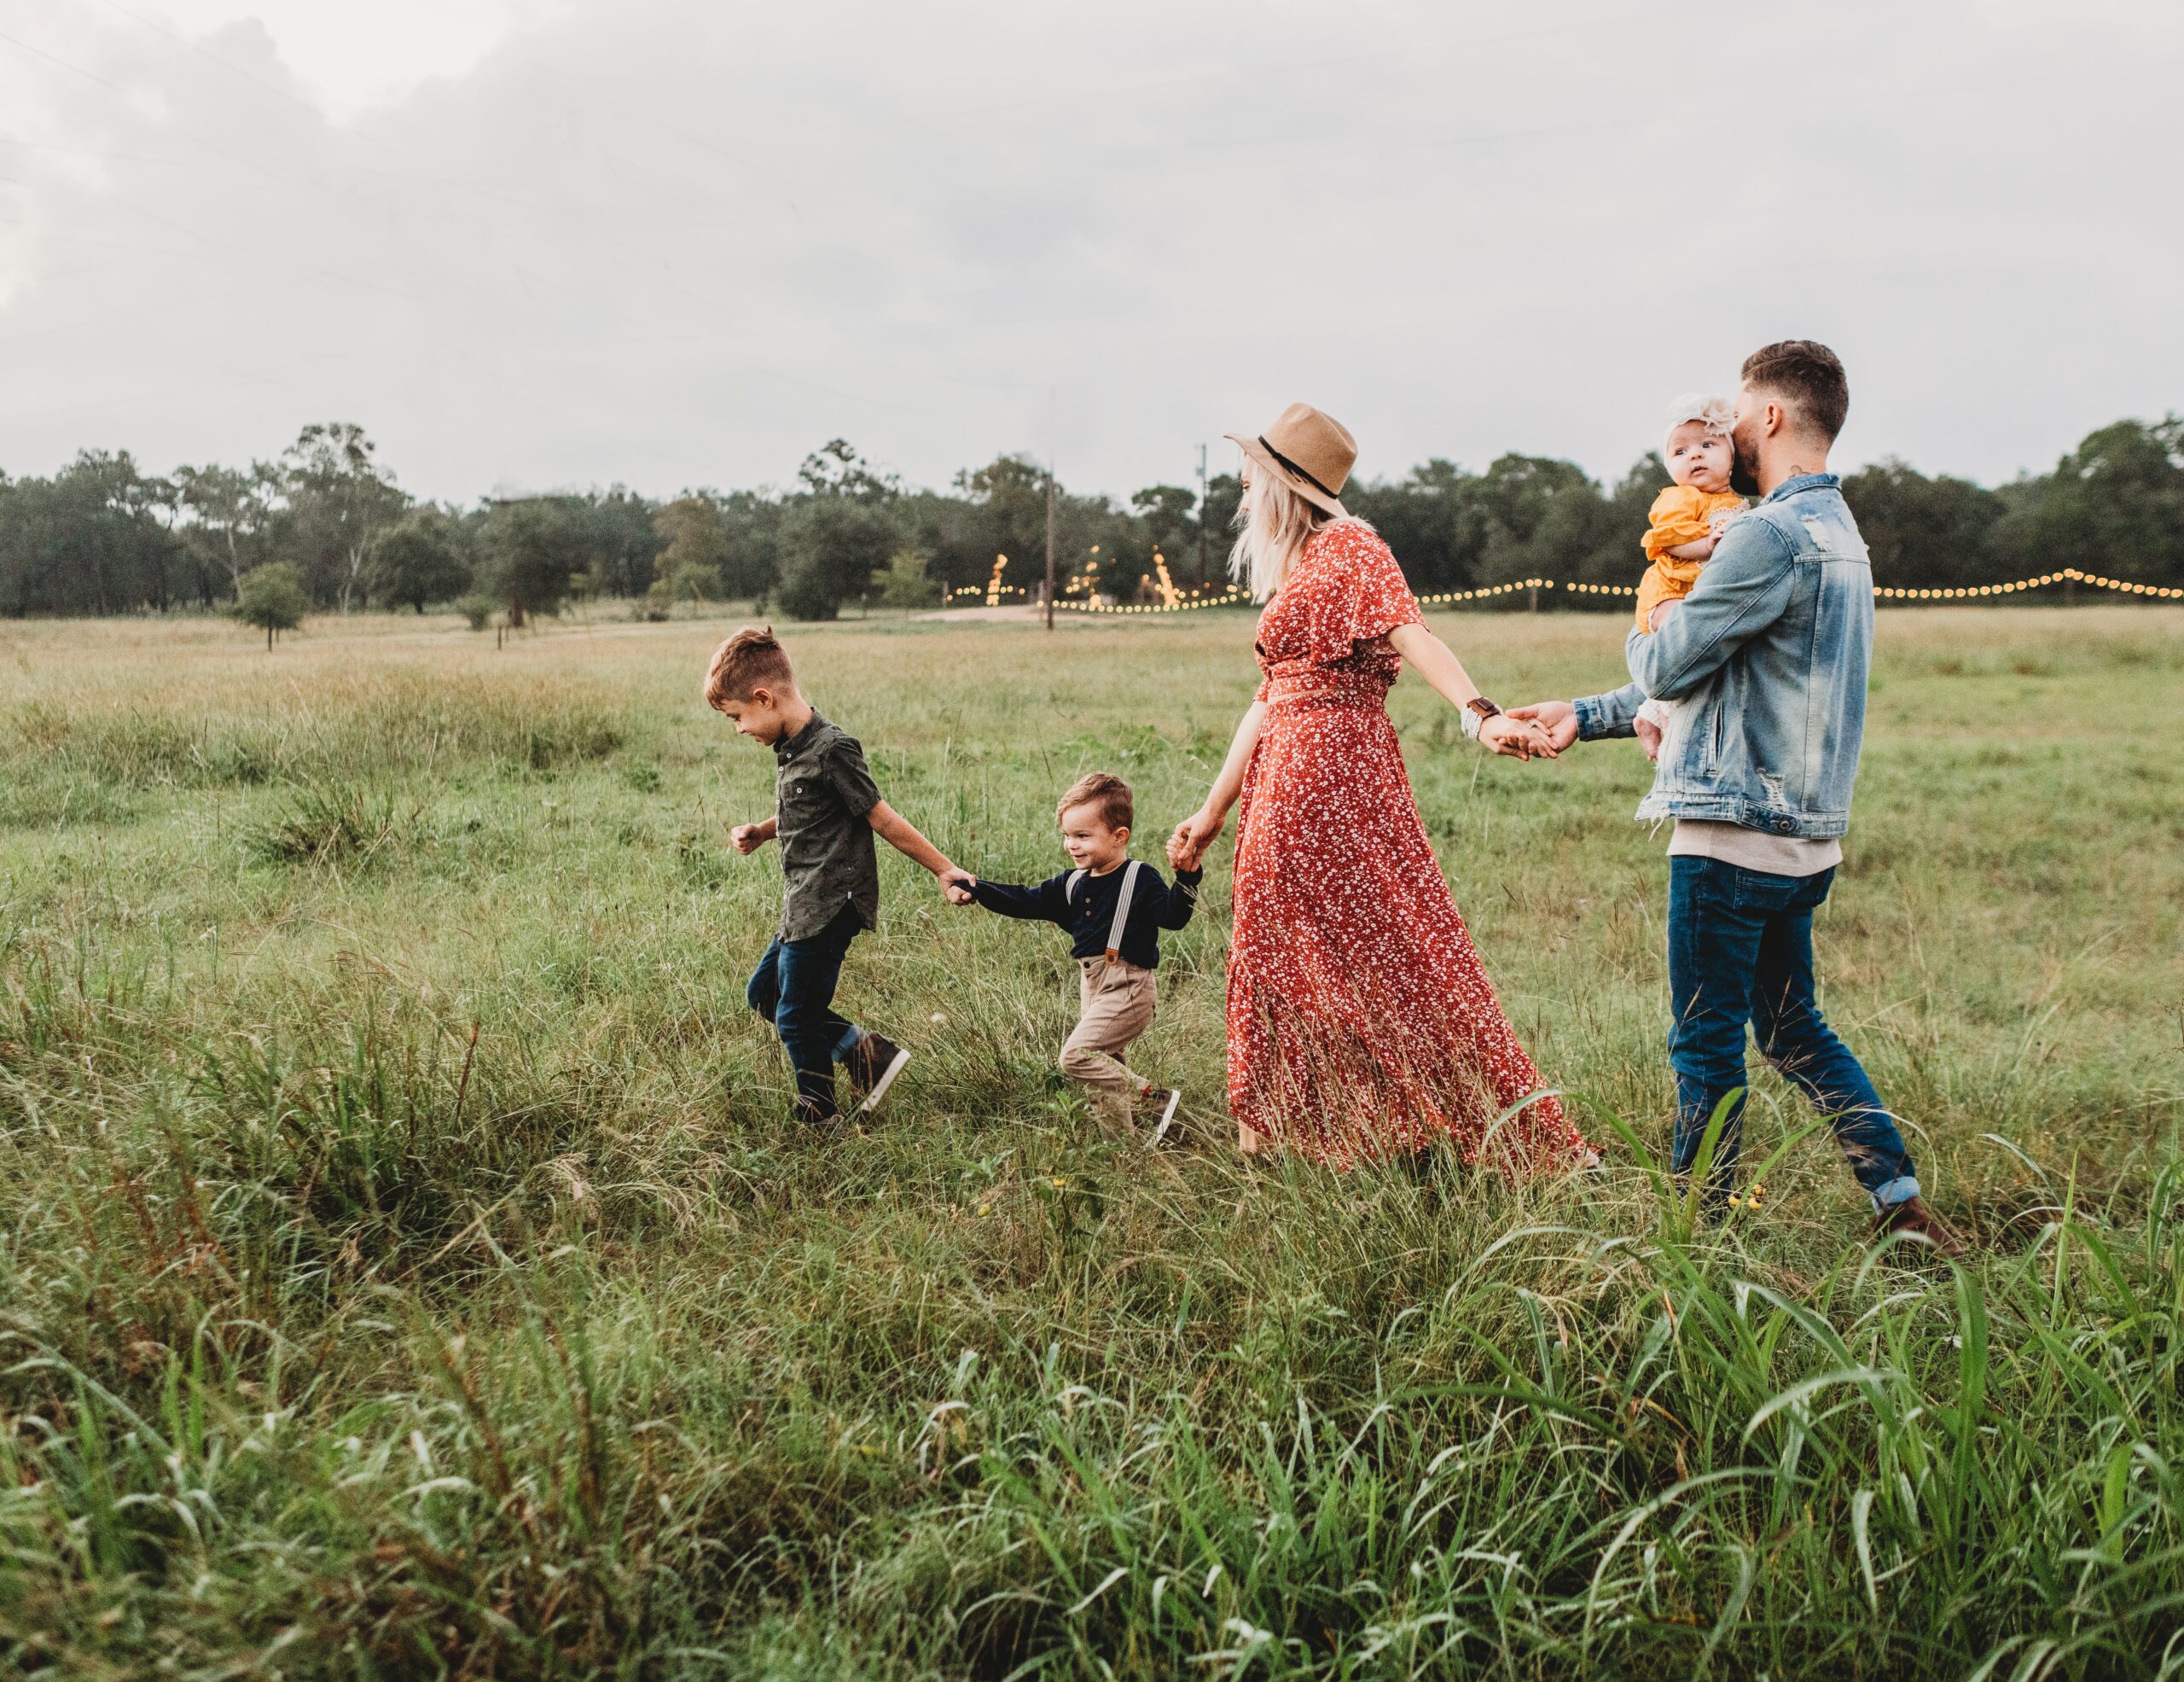 Rodzina w radosnym spacerze przez zieloną łąkę, z uśmiechniętymi rodzicami trzymającymi za ręce swoje dzieci, tworzy poczucie jedności i szczęścia na świeżym powietrzu.